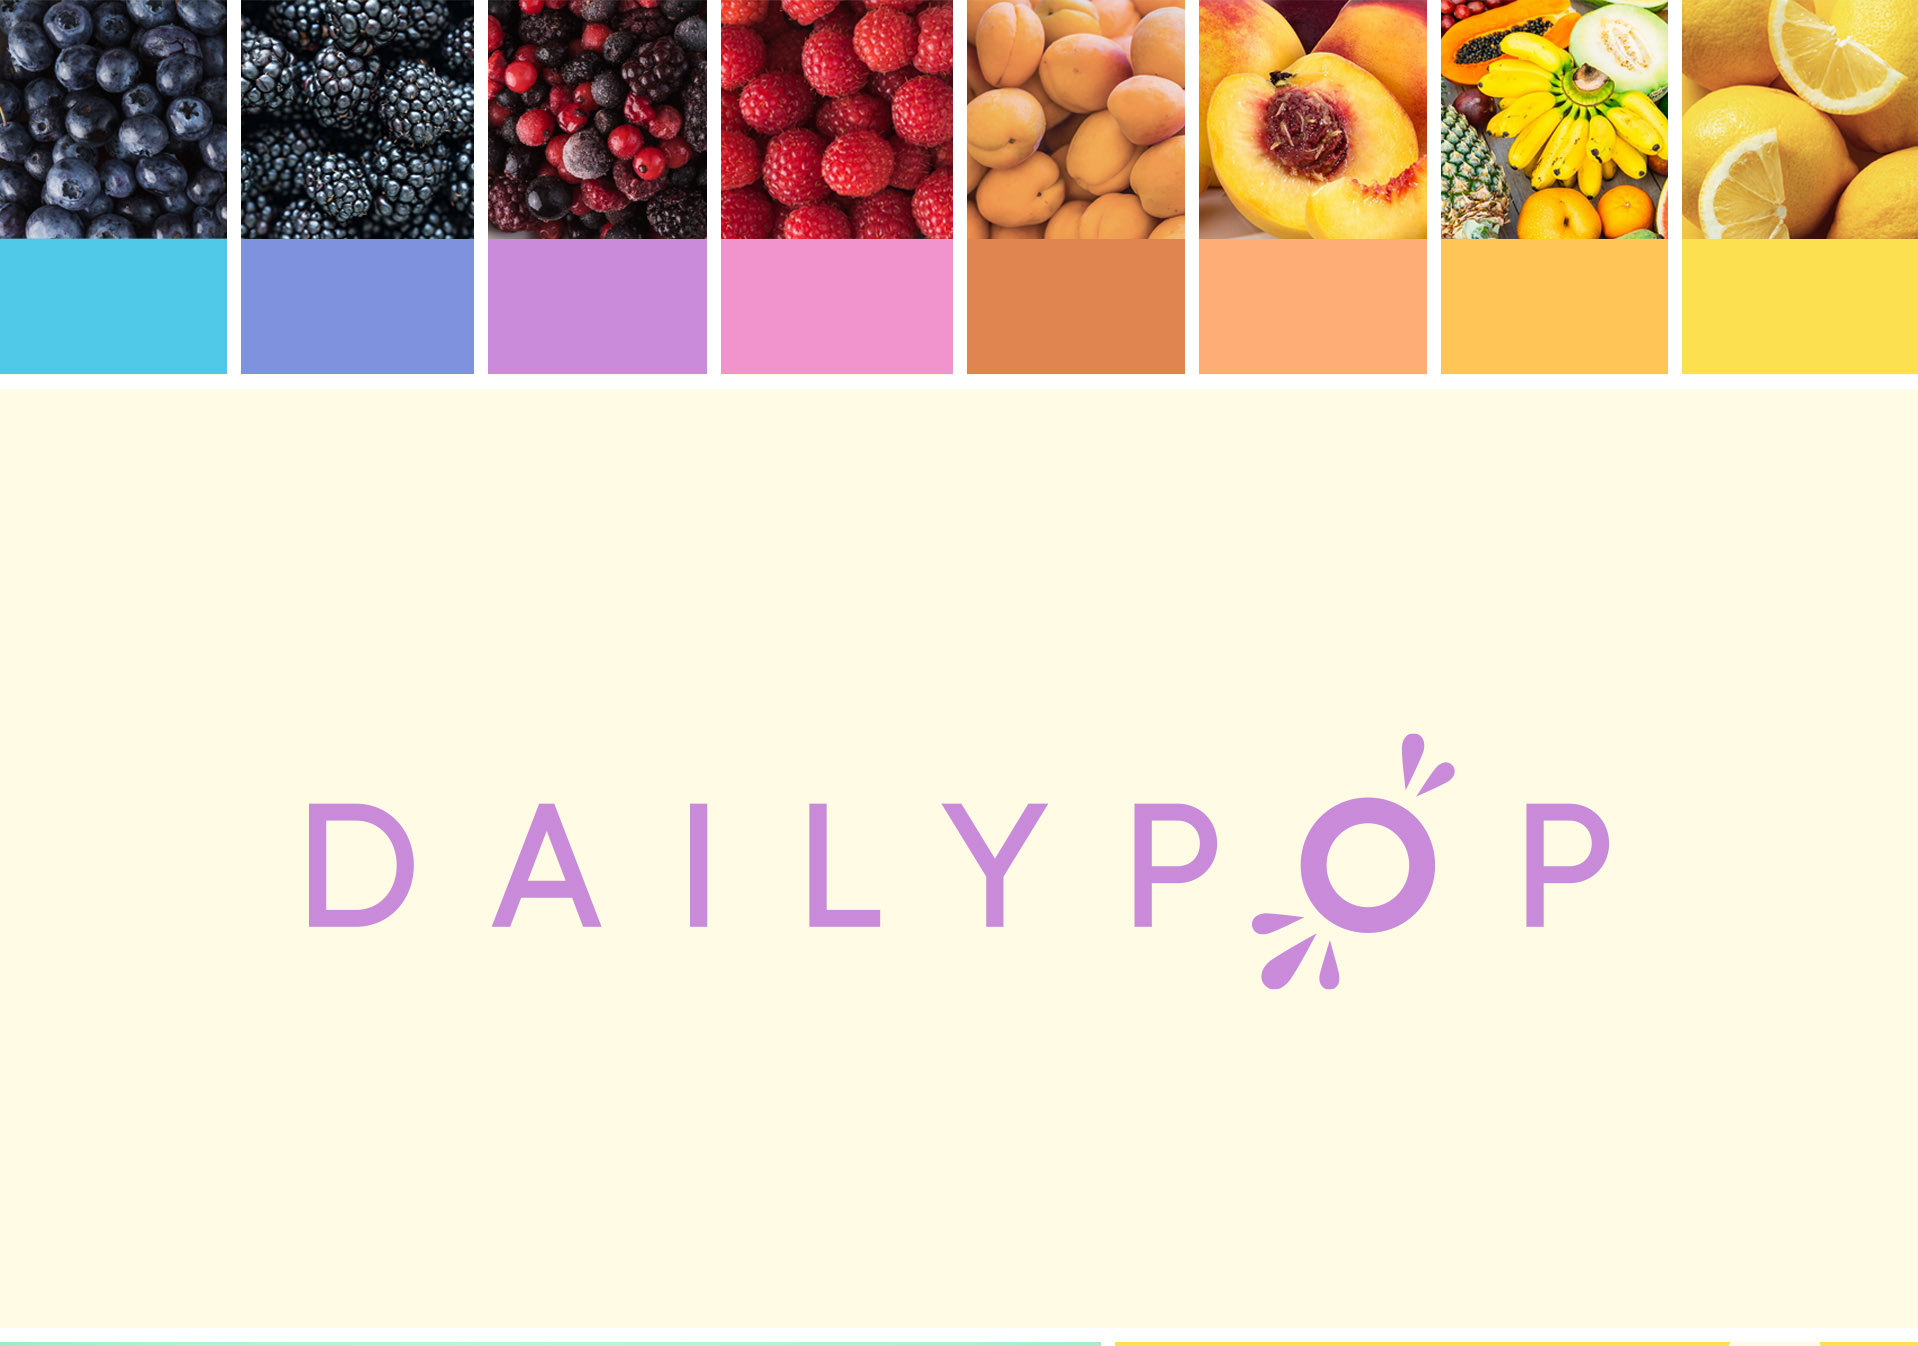 Packaging gummies - Dailypop